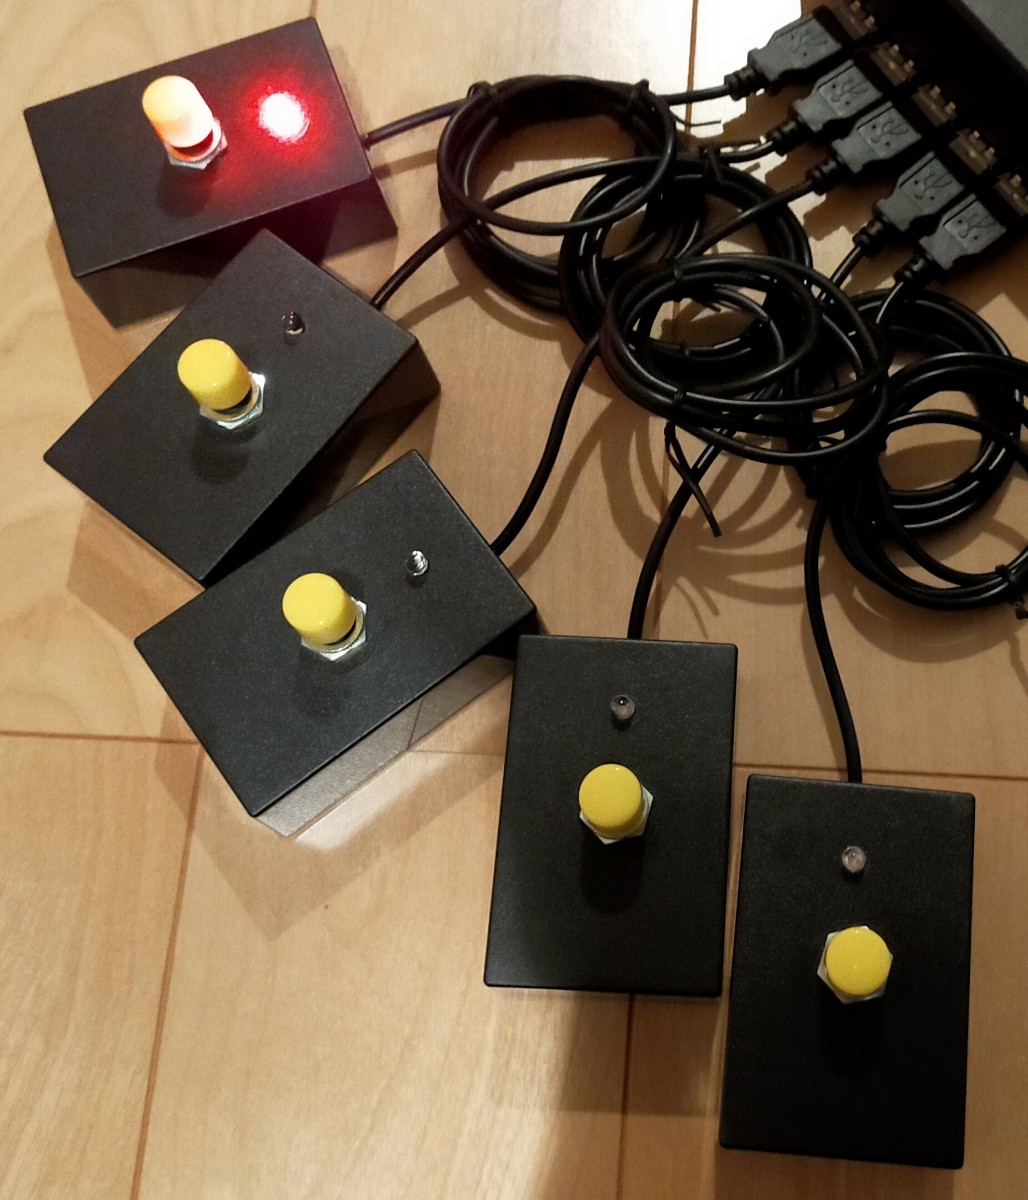 早押し機 スーパーハヤオシピンポンブー、R-Cube PPB用特製早押しボタン 5個 黄ボタン、赤LEDセット